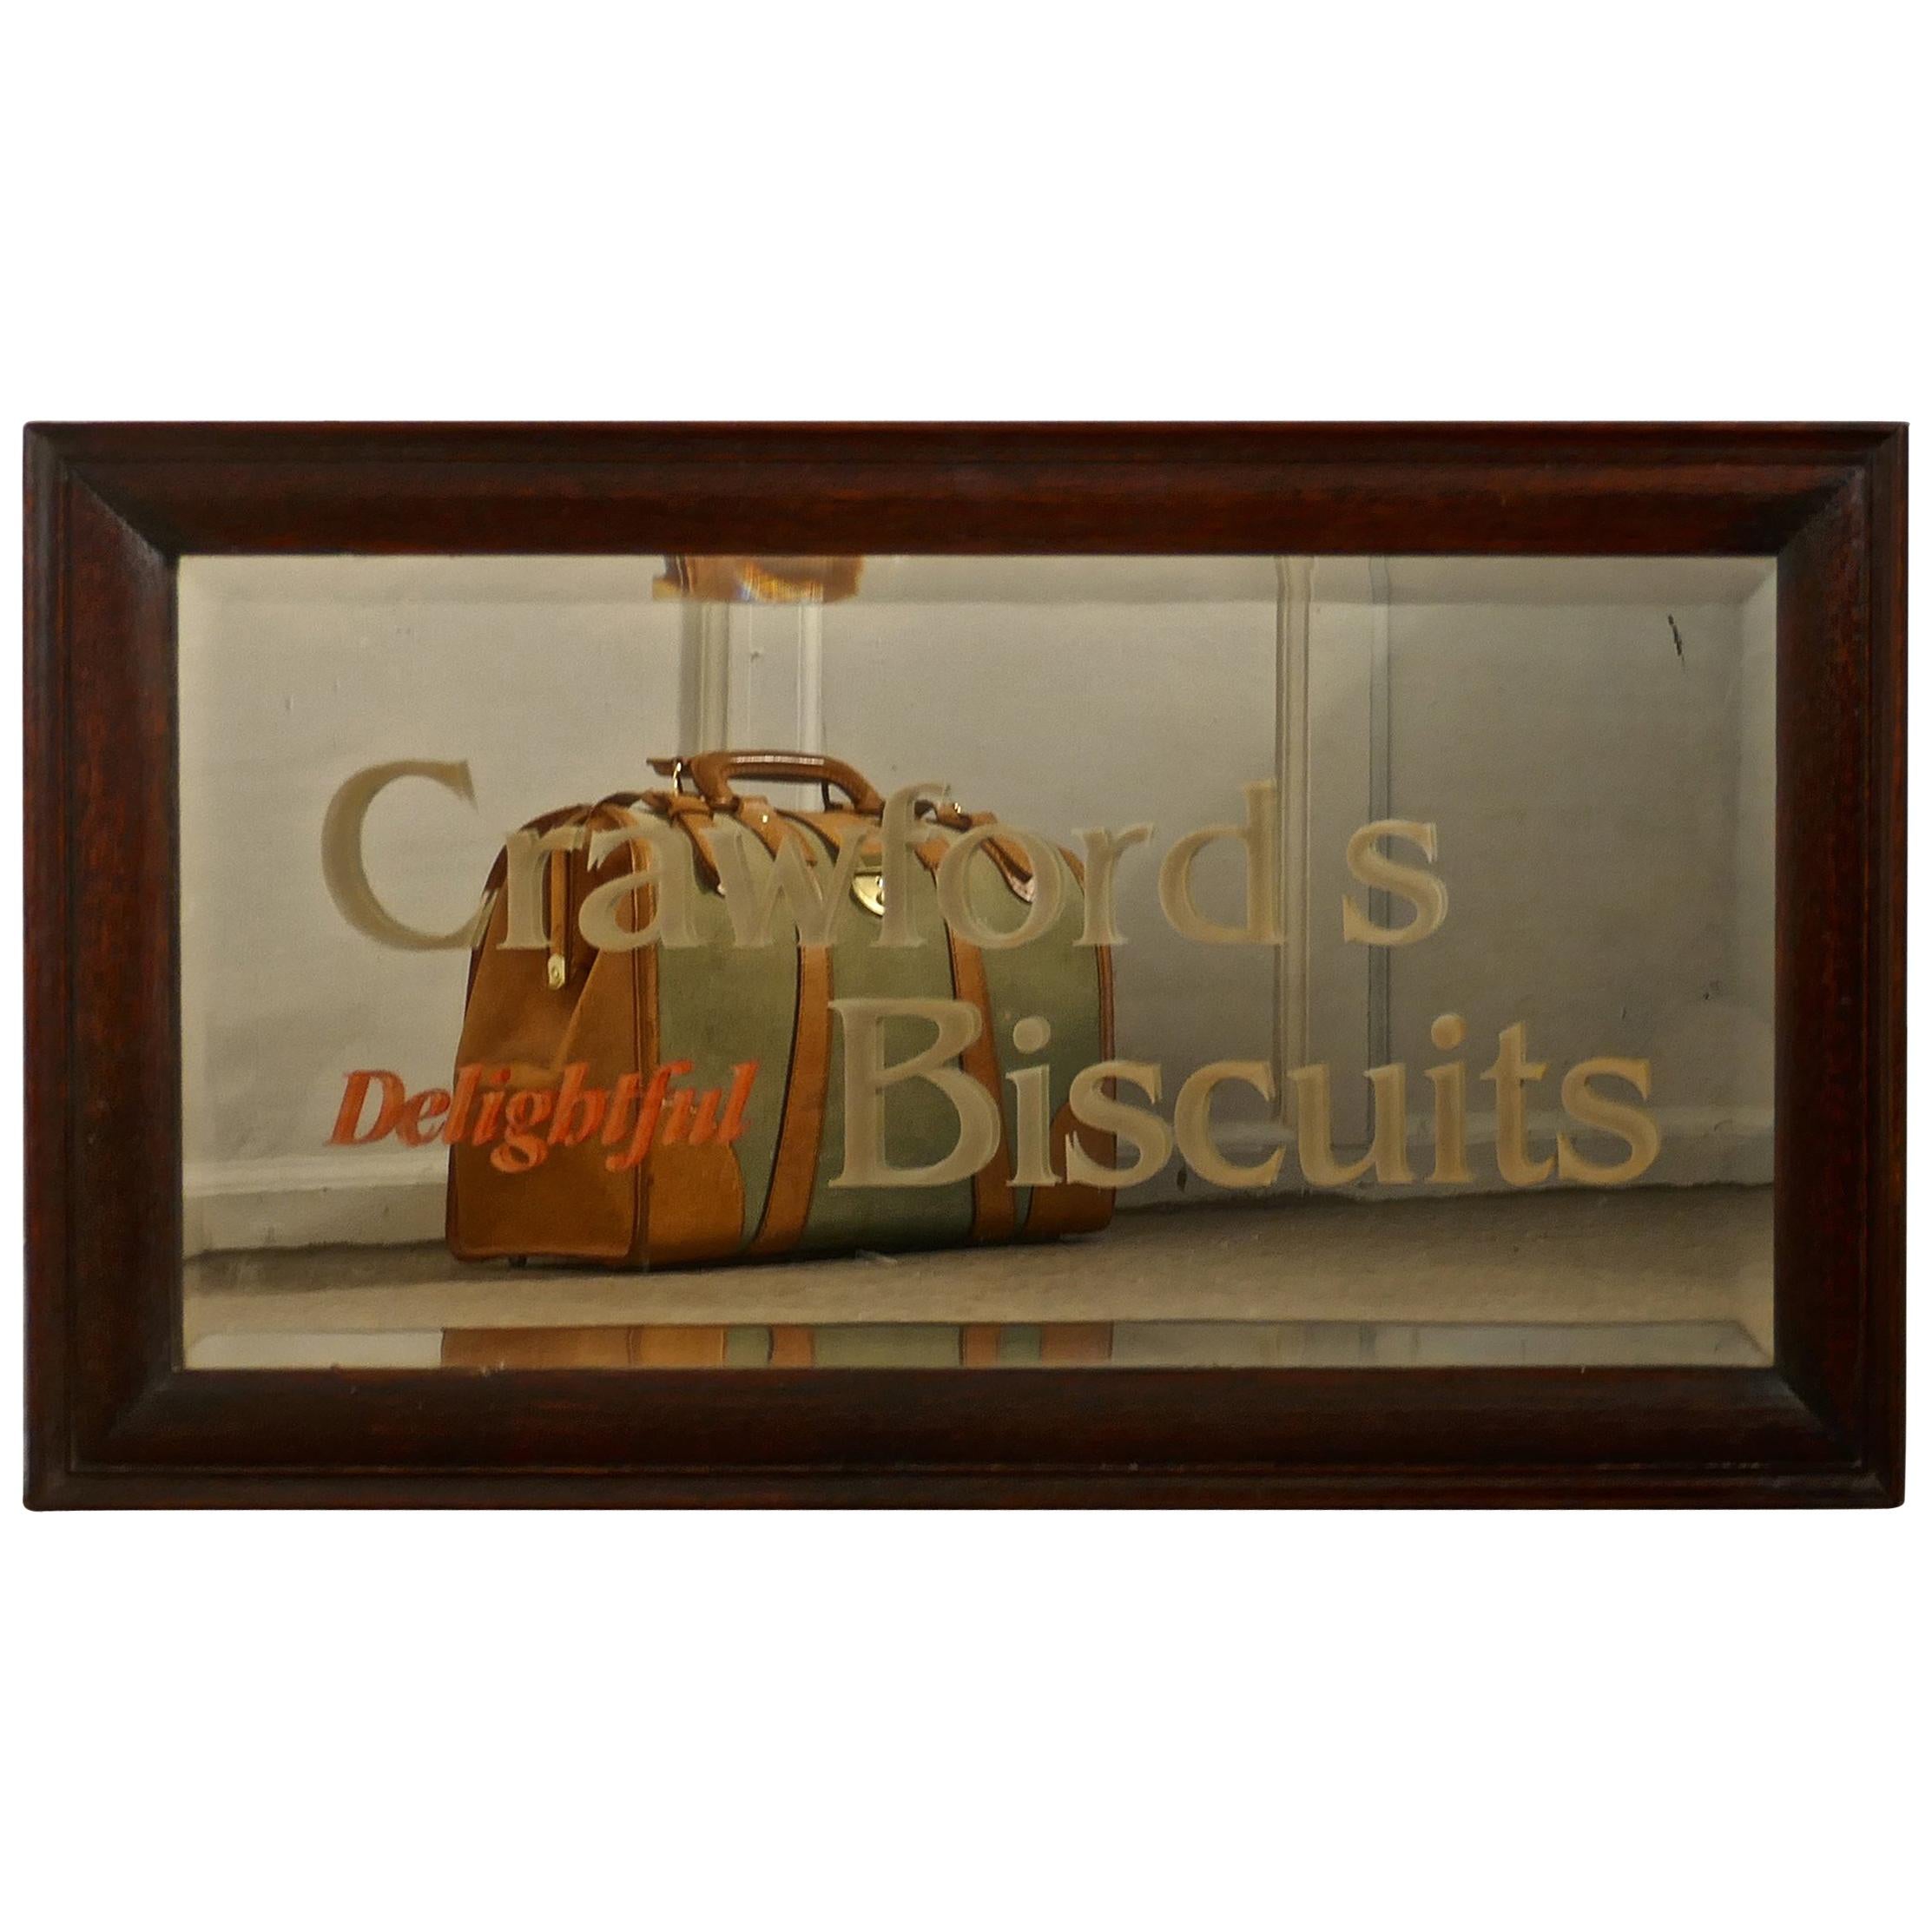 Werbespiegel Crawford's Delightful Biscuits Bäcker oder Cafe 